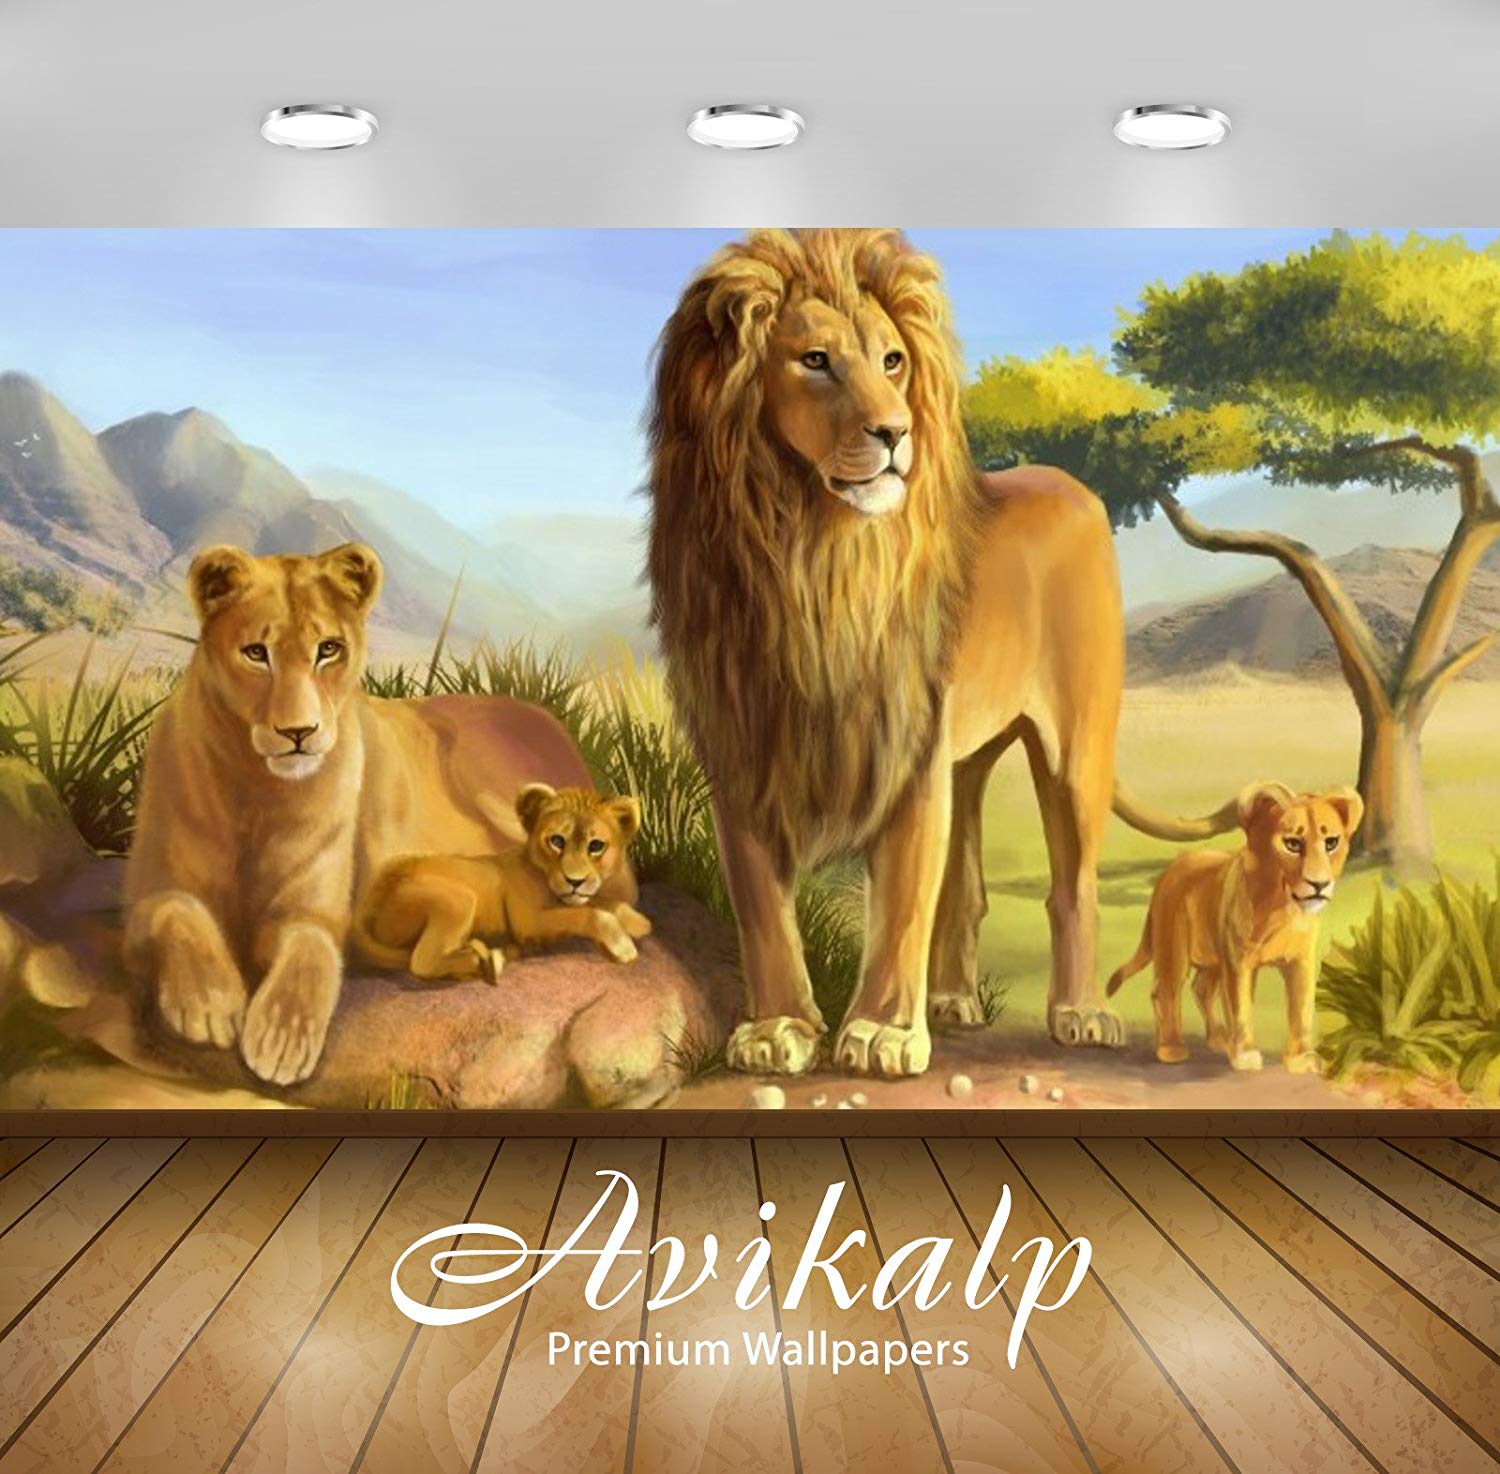 ライオンのhdの壁紙,ライオン,野生動物,ネコ科,大きな猫,マサイライオン